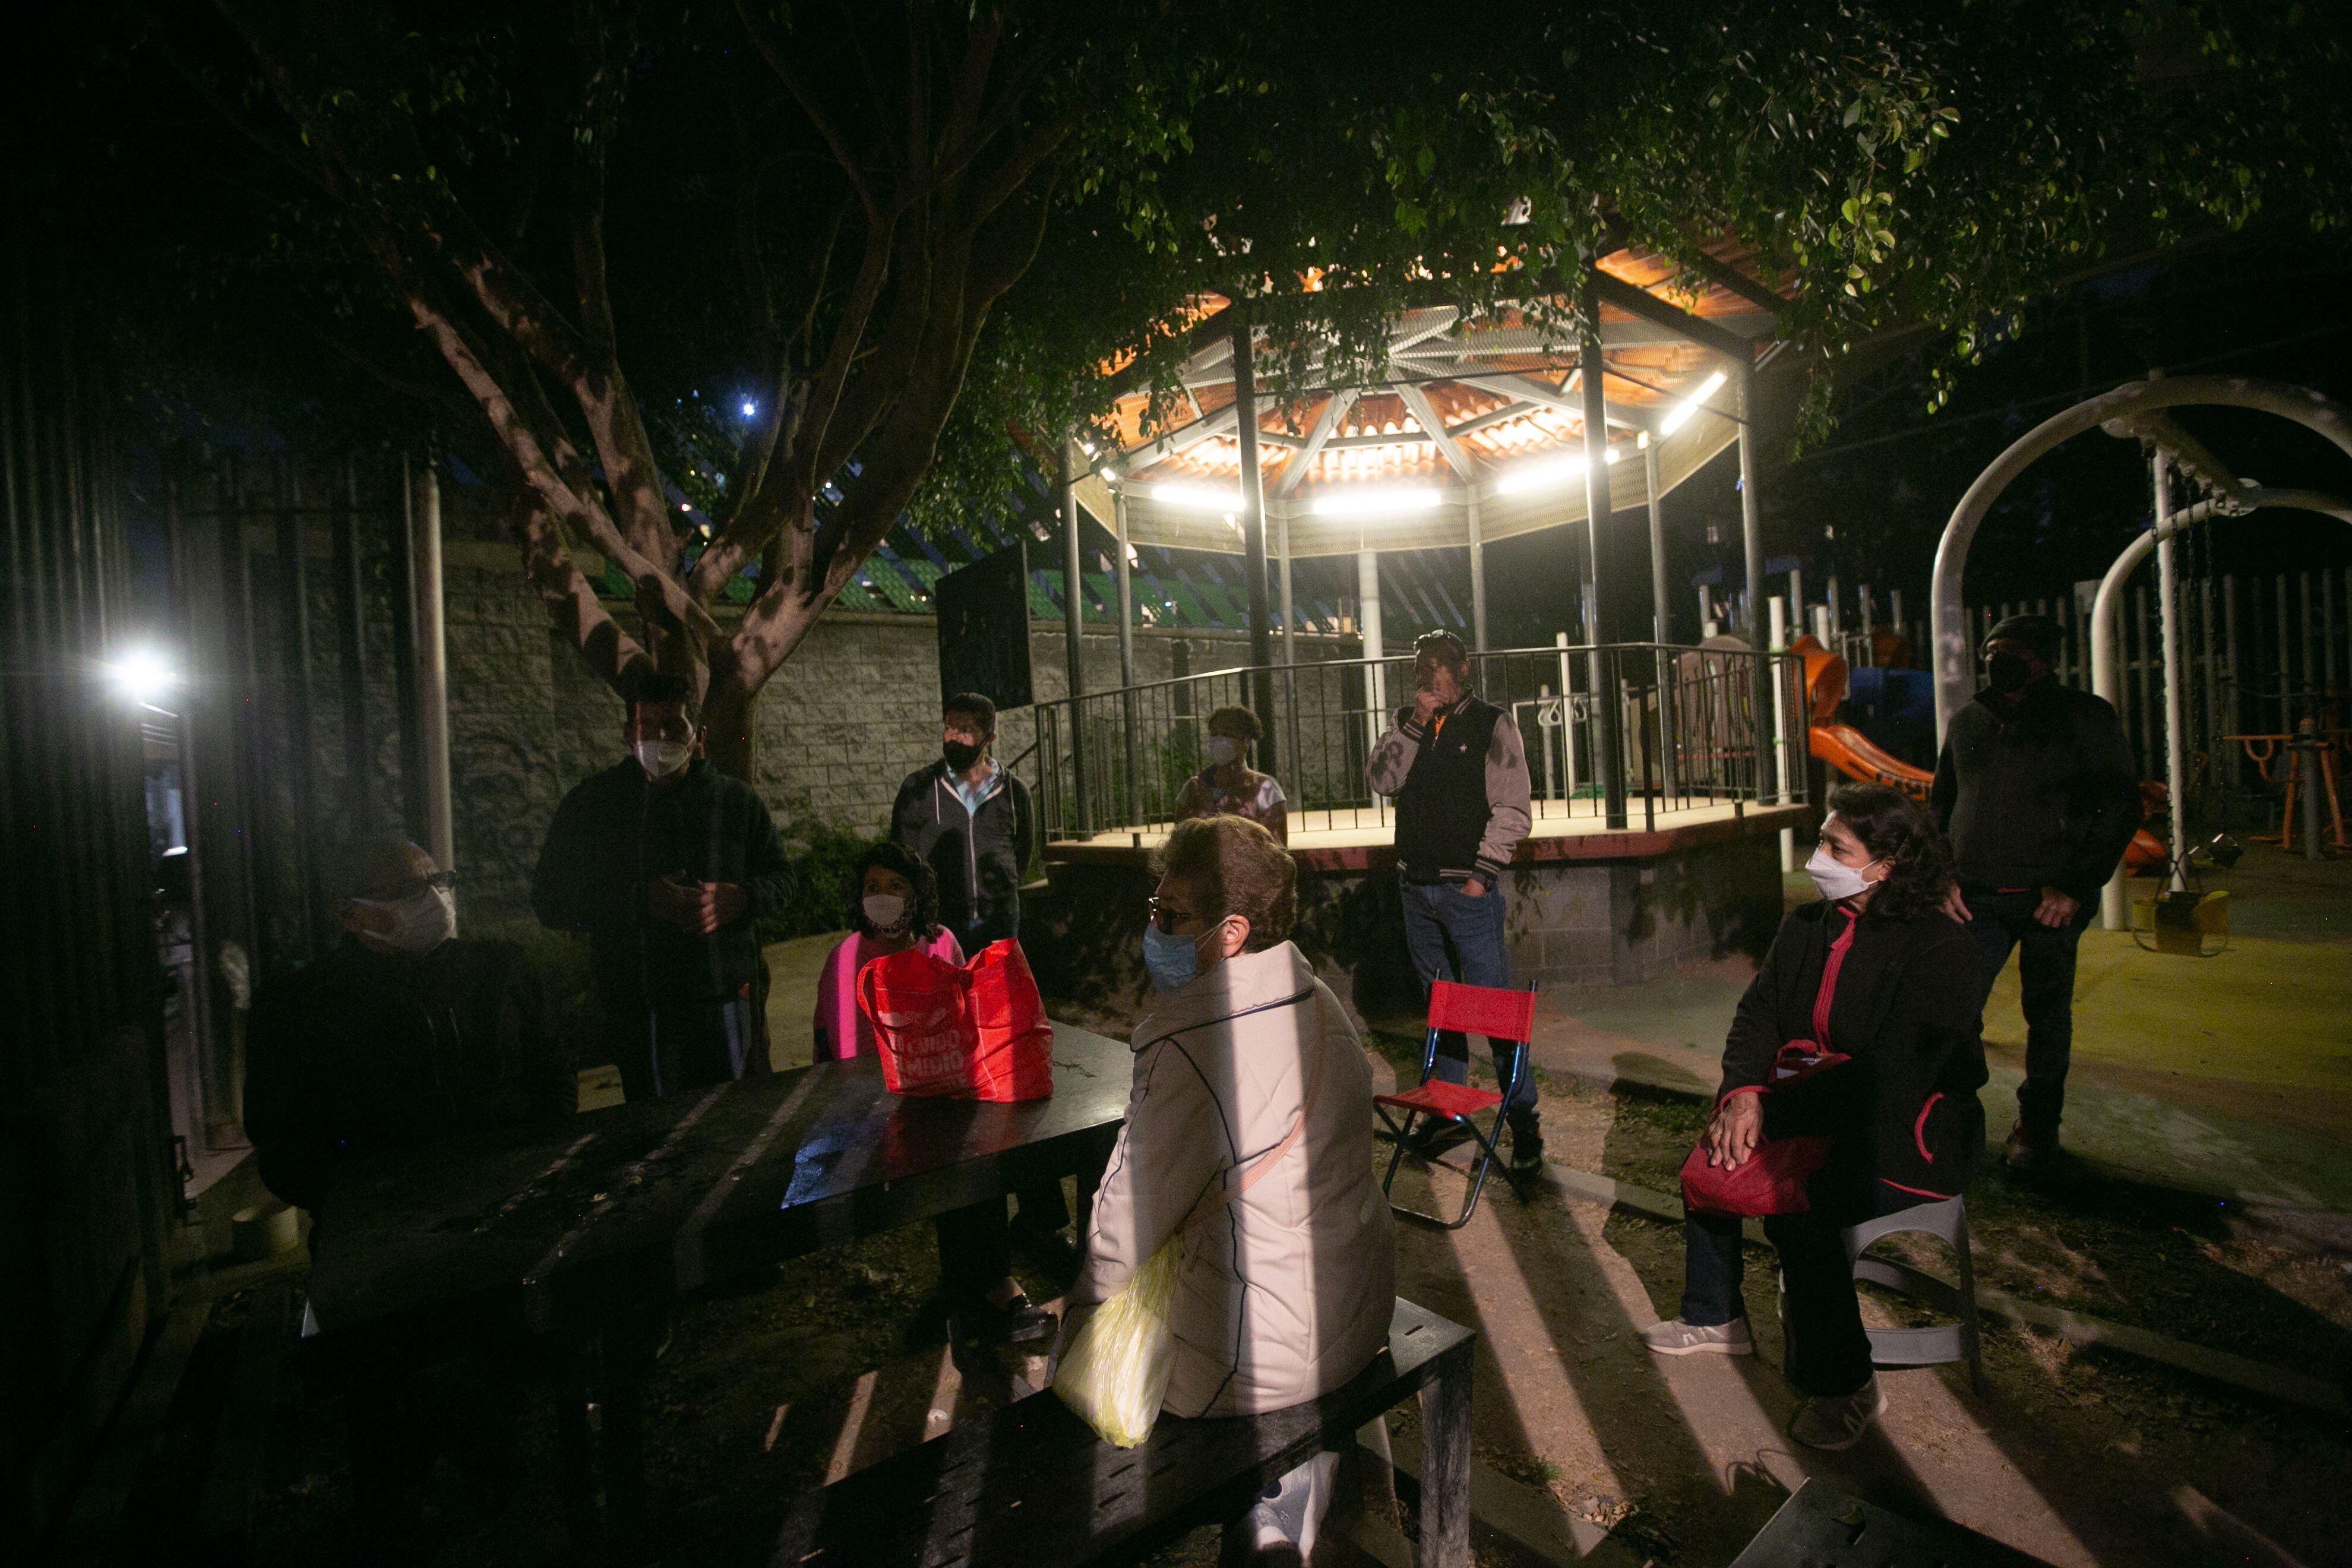 Asamblea de pobladores originarios de Xoco, reunidos en un parque infantil.